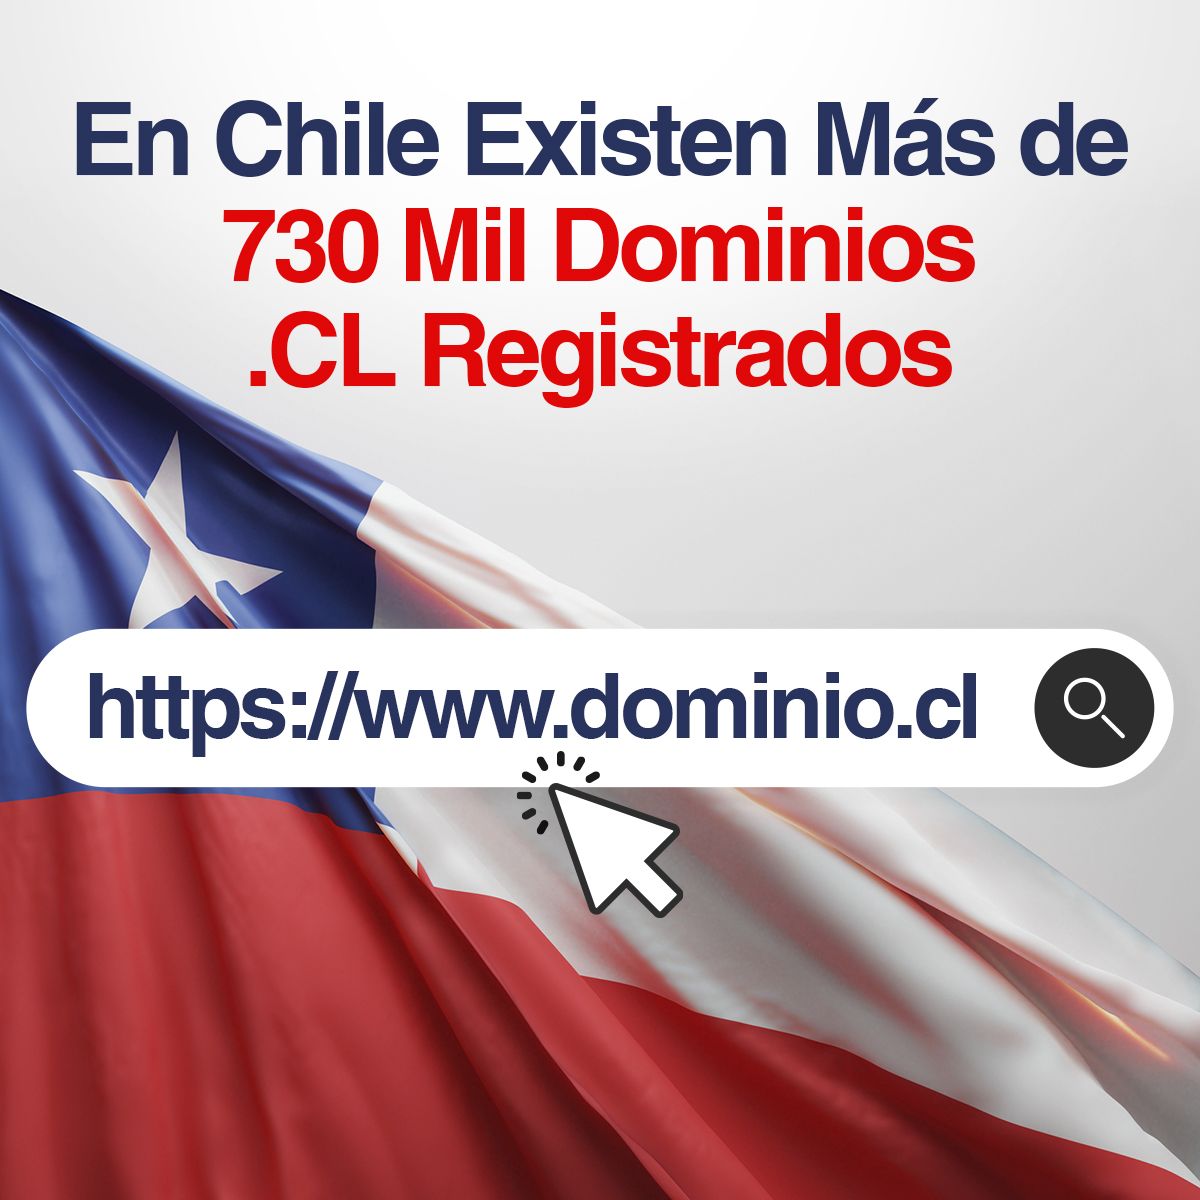 En Chile Existen Más de 730 Mil Dominios .CL Registrados